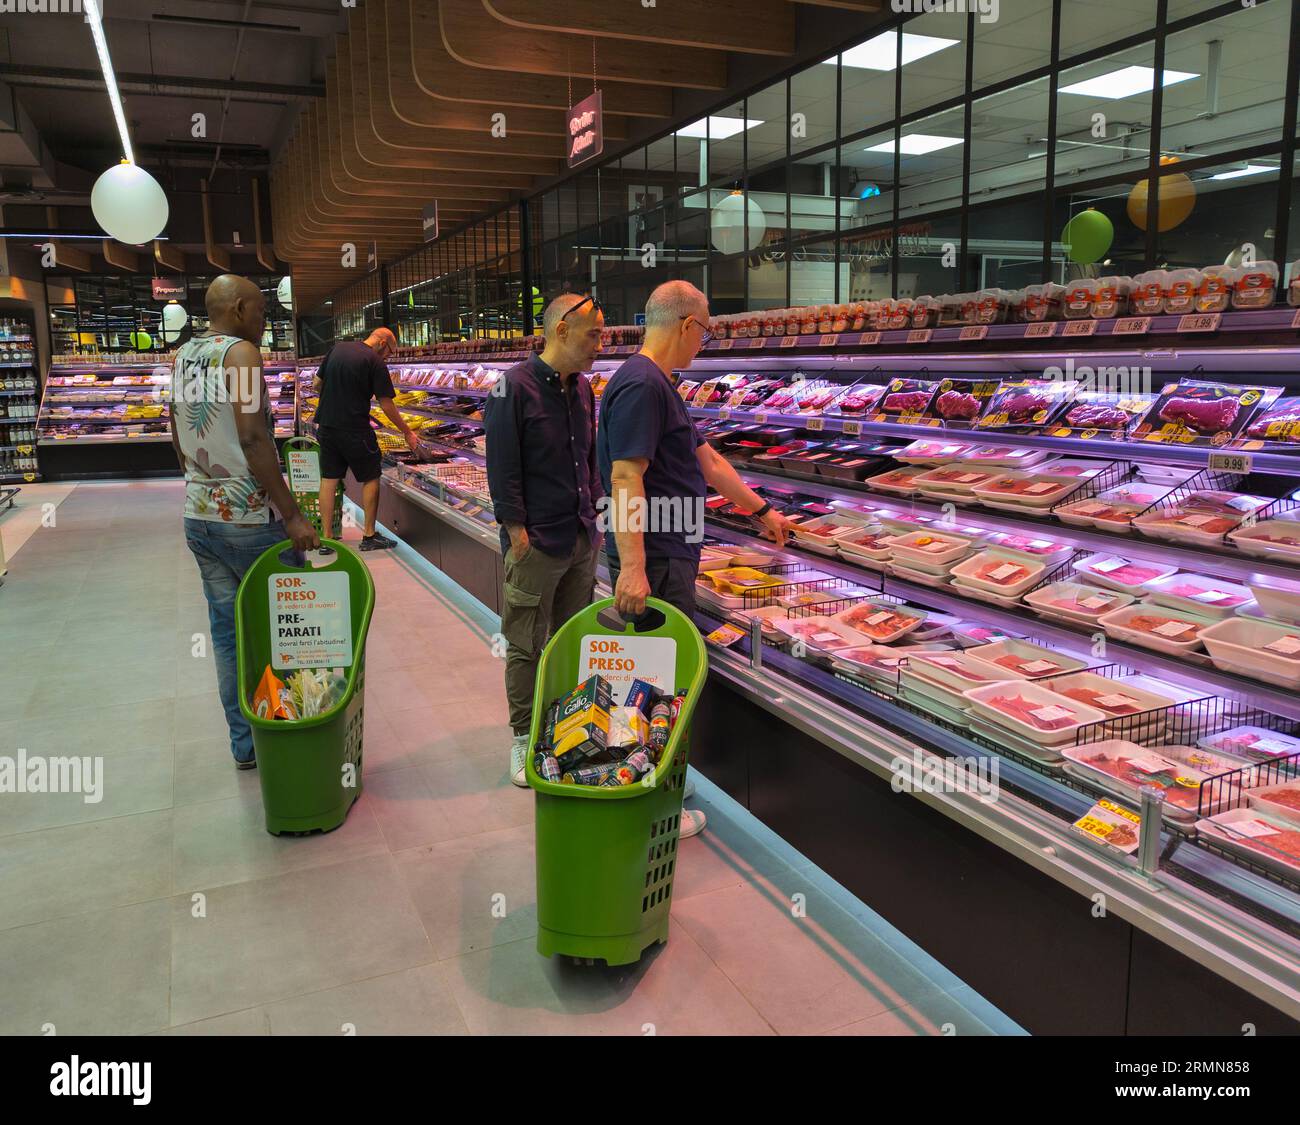 Les hommes comparent les prix de la viande, dans la section boucherie d'un grand supermarché à Rome, en Italie Banque D'Images